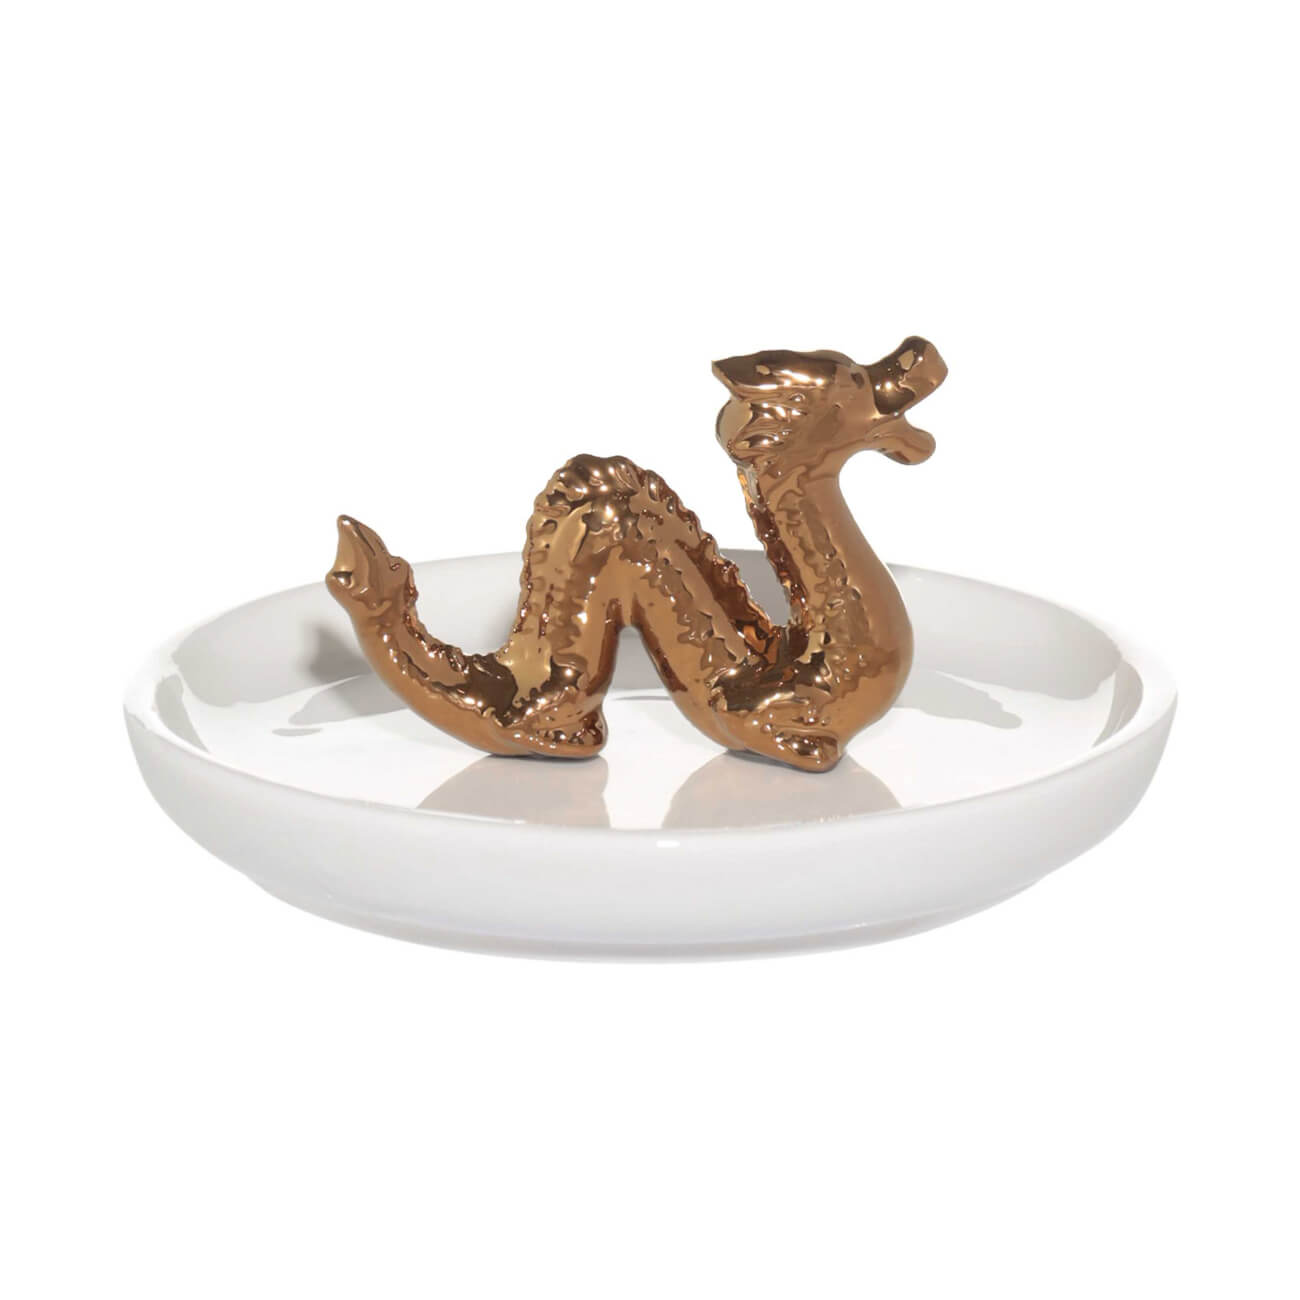 Держатель для украшений, 13х2 см, керамика, белый, Золотистый дракон, Dragon dayron изображение № 1